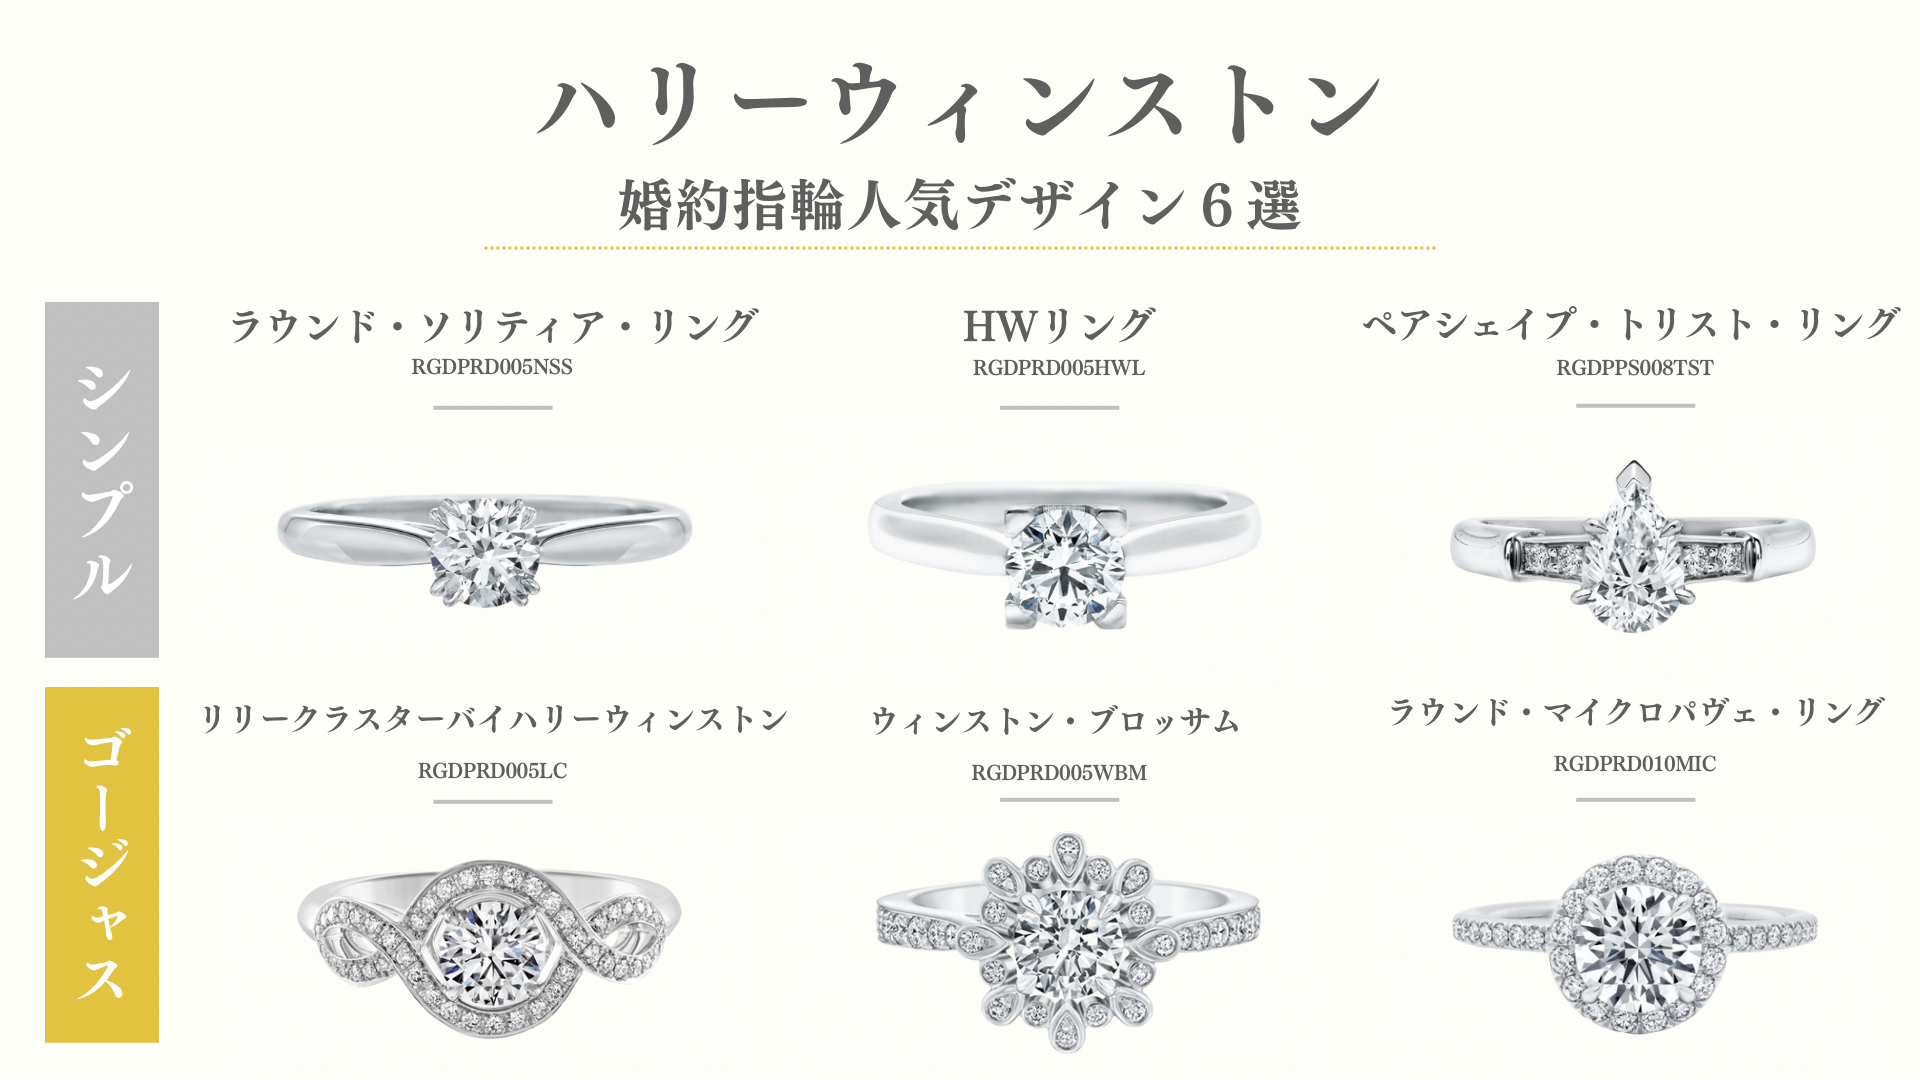 ハリーウィンストンの婚約指輪の人気デザインと購入価格を紹介します。